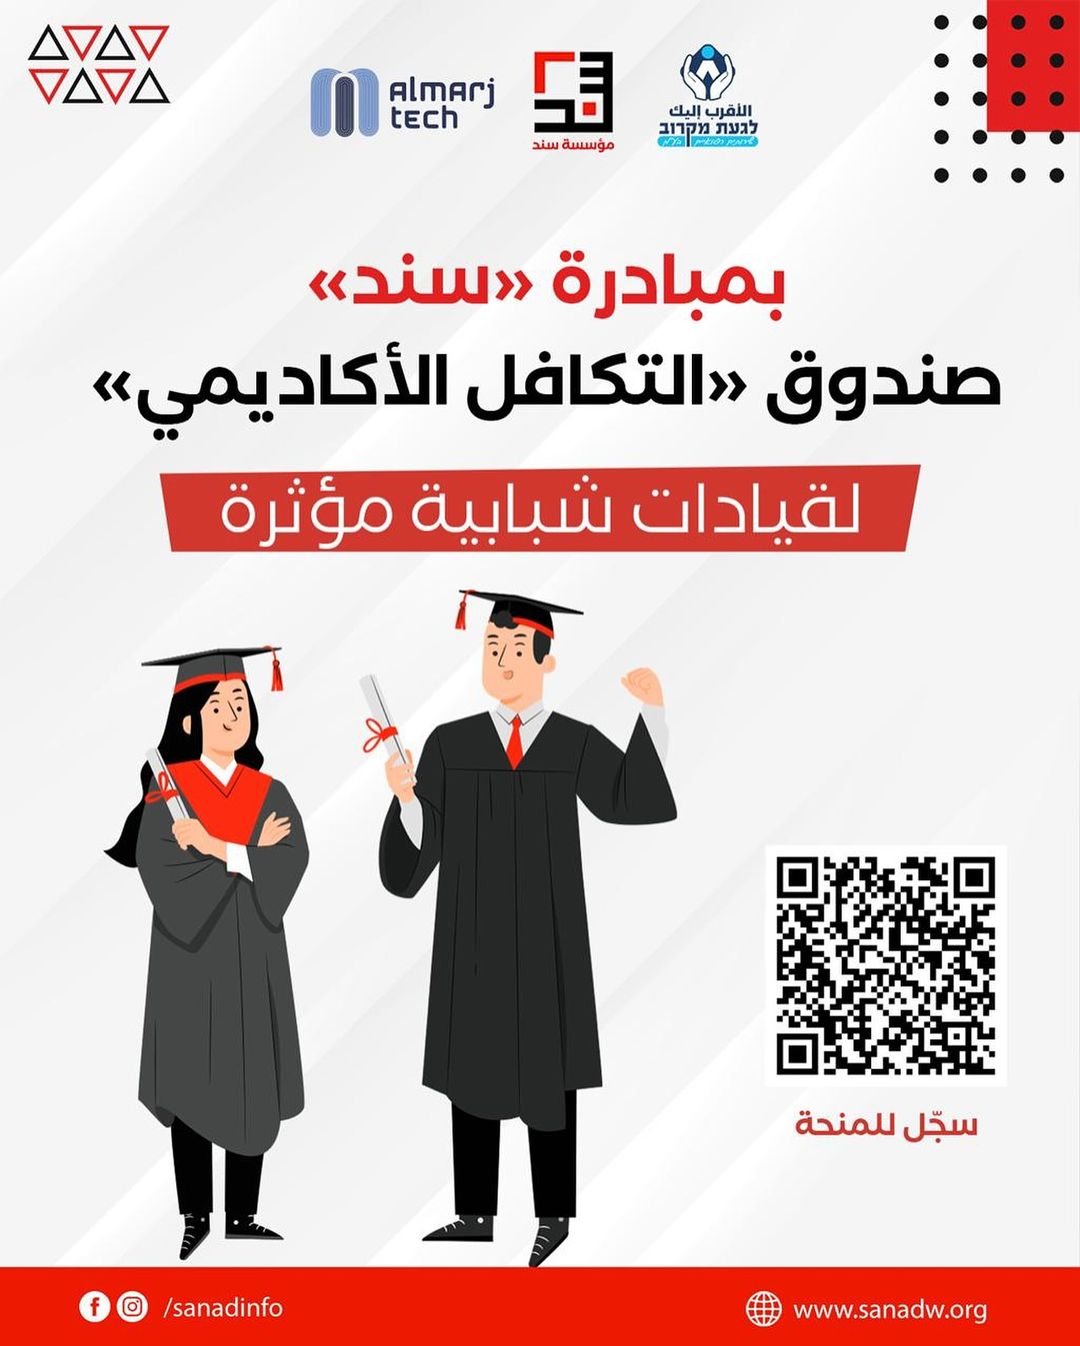 تعلن مؤسسة «سند» للتطوير المستدام في المجتمع العربيّ عن إنشاء صندوق «التكافل الأكاديمي» لطلاب الجامعات والكليات العرب